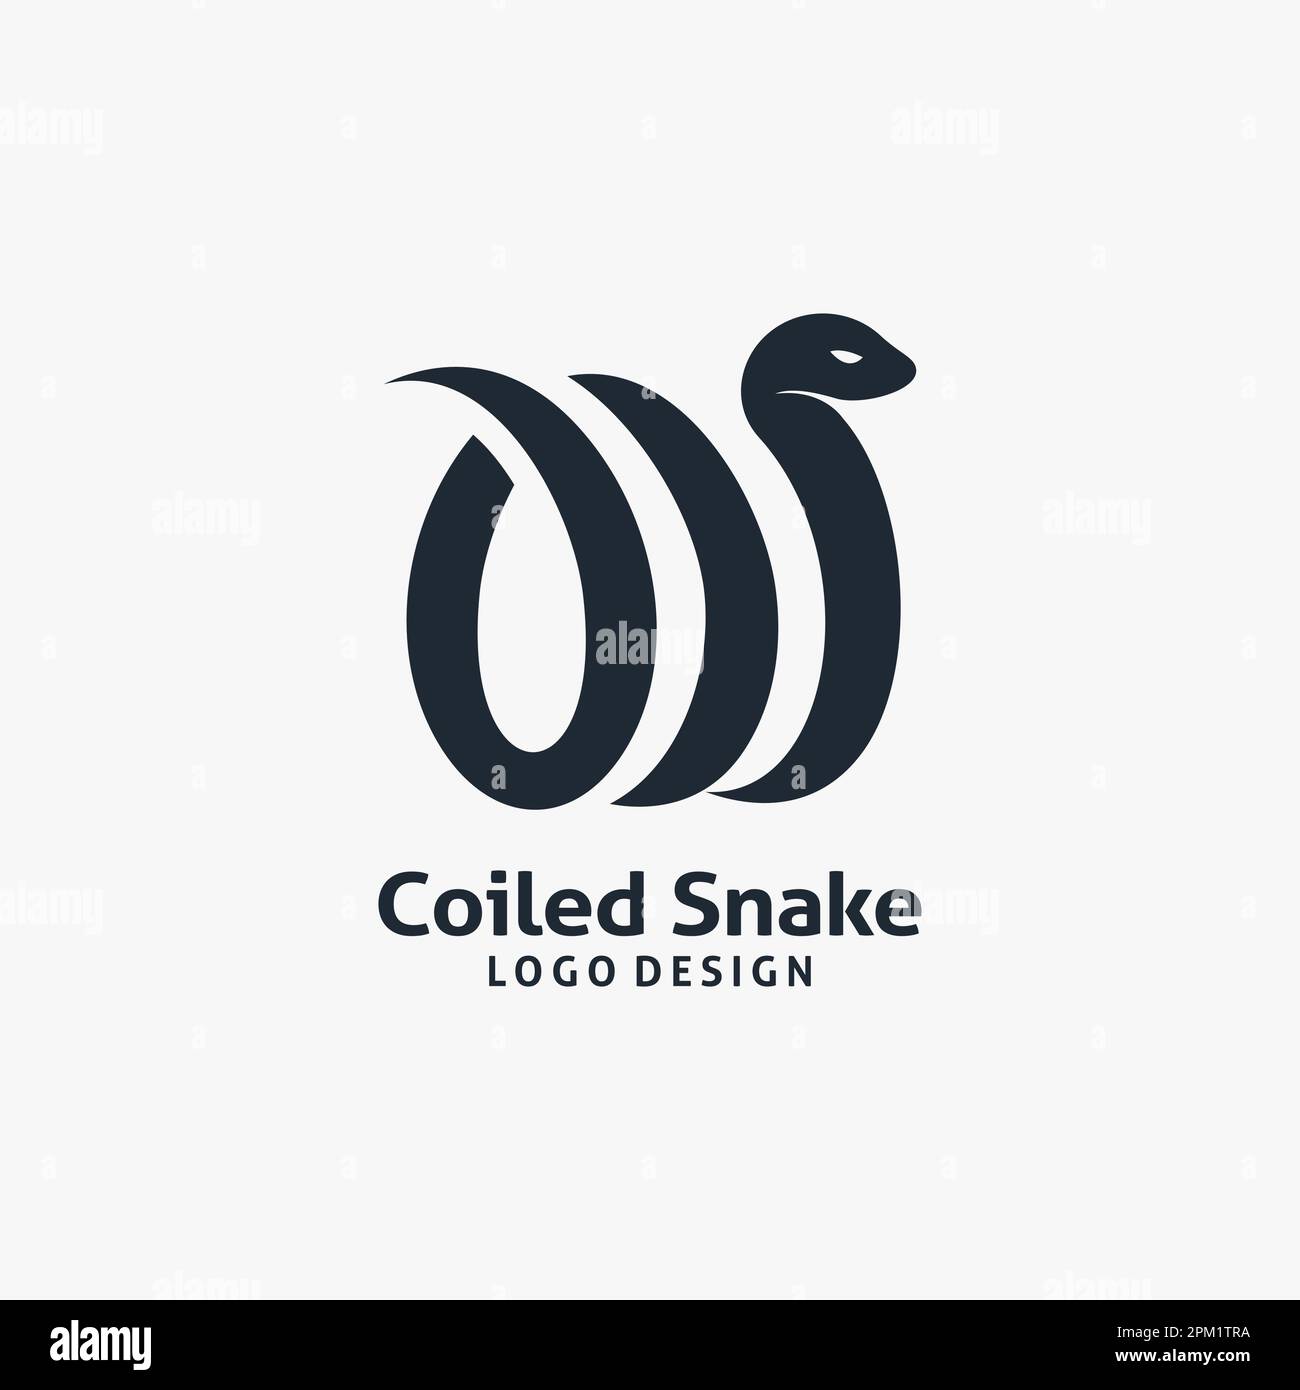 Coiled snake logo design Stock Vector